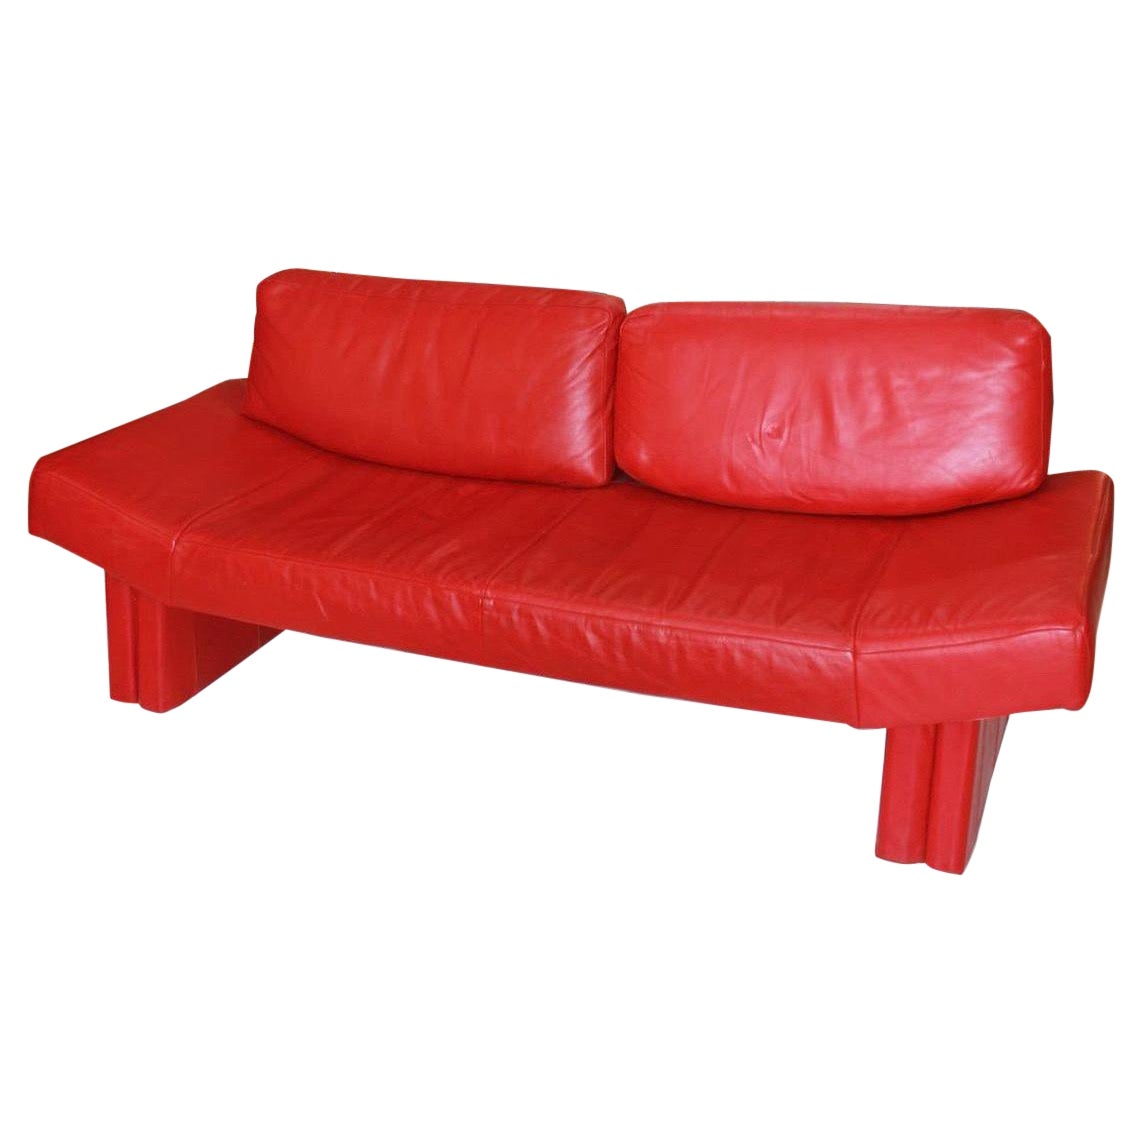 Canapé postmoderne en cuir rouge de Flep S.P.a. Bitonto, fabriqué en Italie